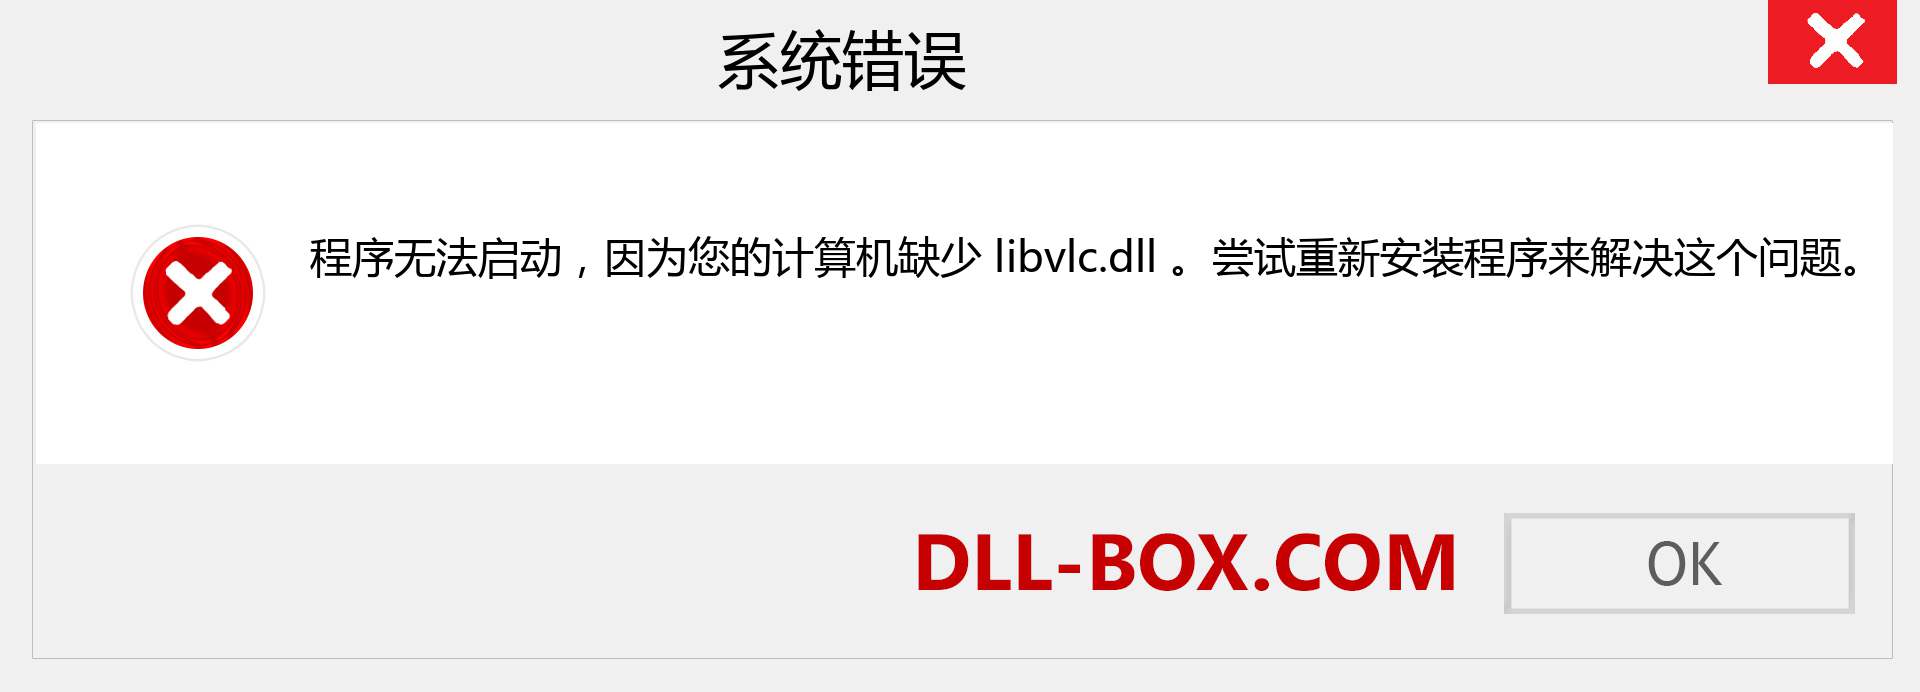 libvlc.dll 文件丢失？。 适用于 Windows 7、8、10 的下载 - 修复 Windows、照片、图像上的 libvlc dll 丢失错误